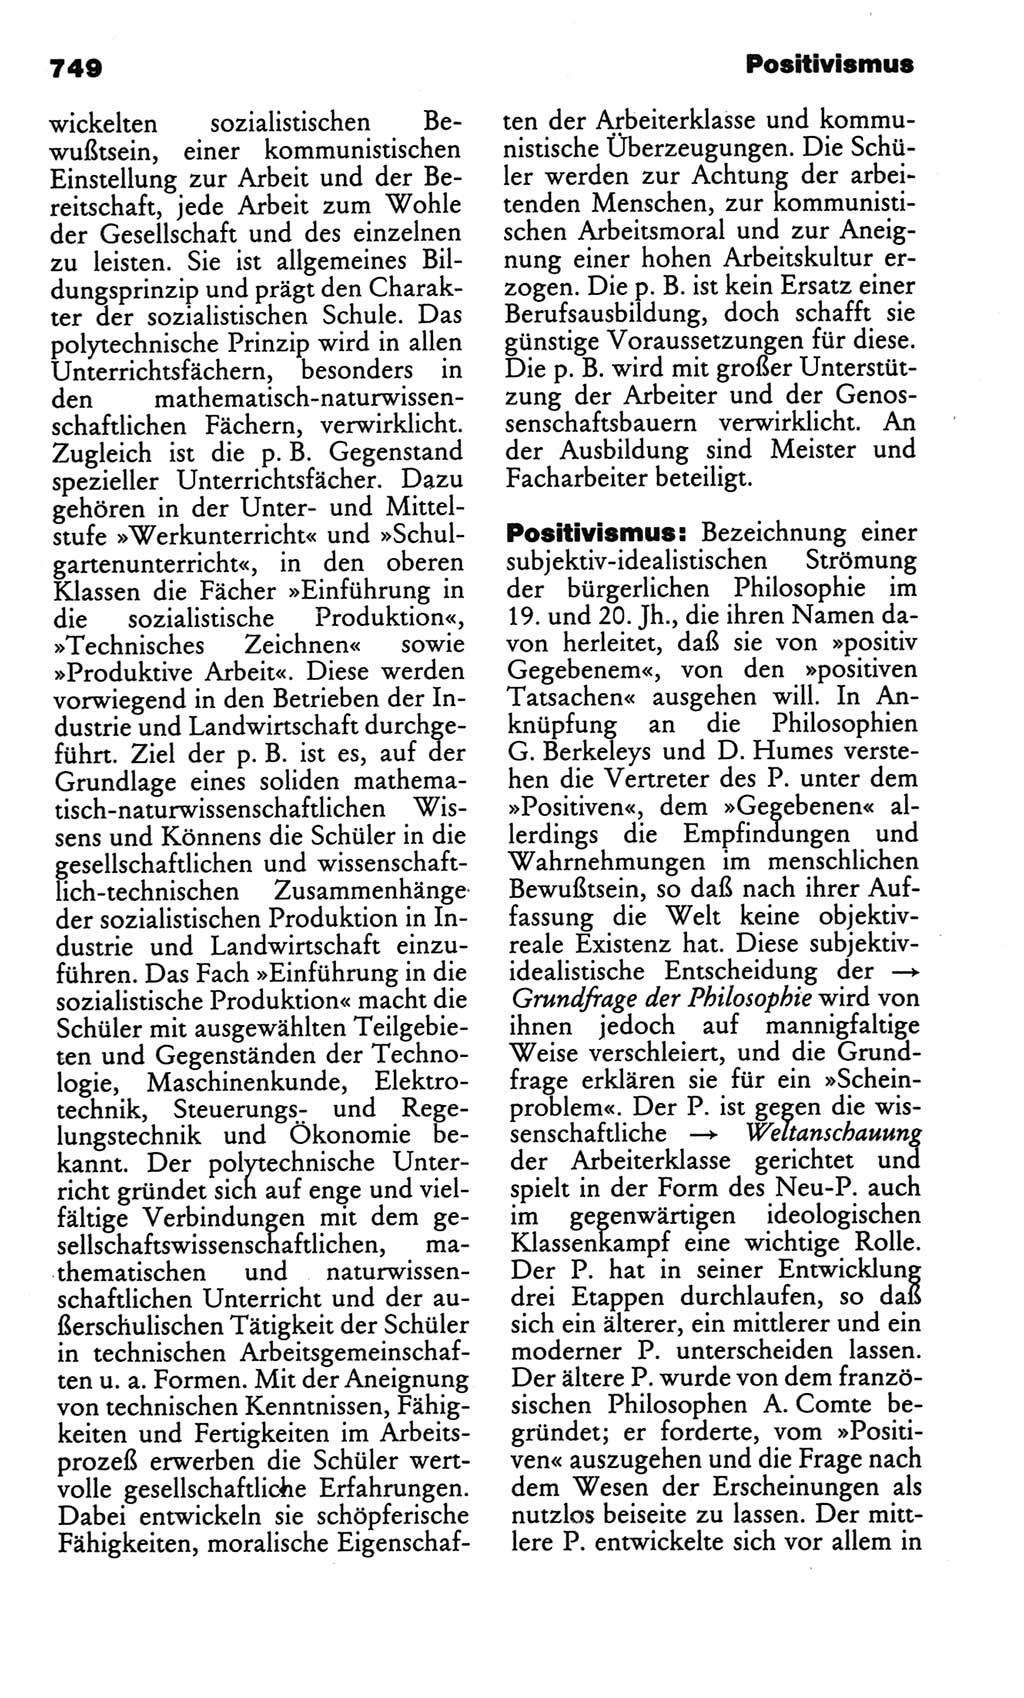 Kleines politisches Wörterbuch [Deutsche Demokratische Republik (DDR)] 1986, Seite 749 (Kl. pol. Wb. DDR 1986, S. 749)